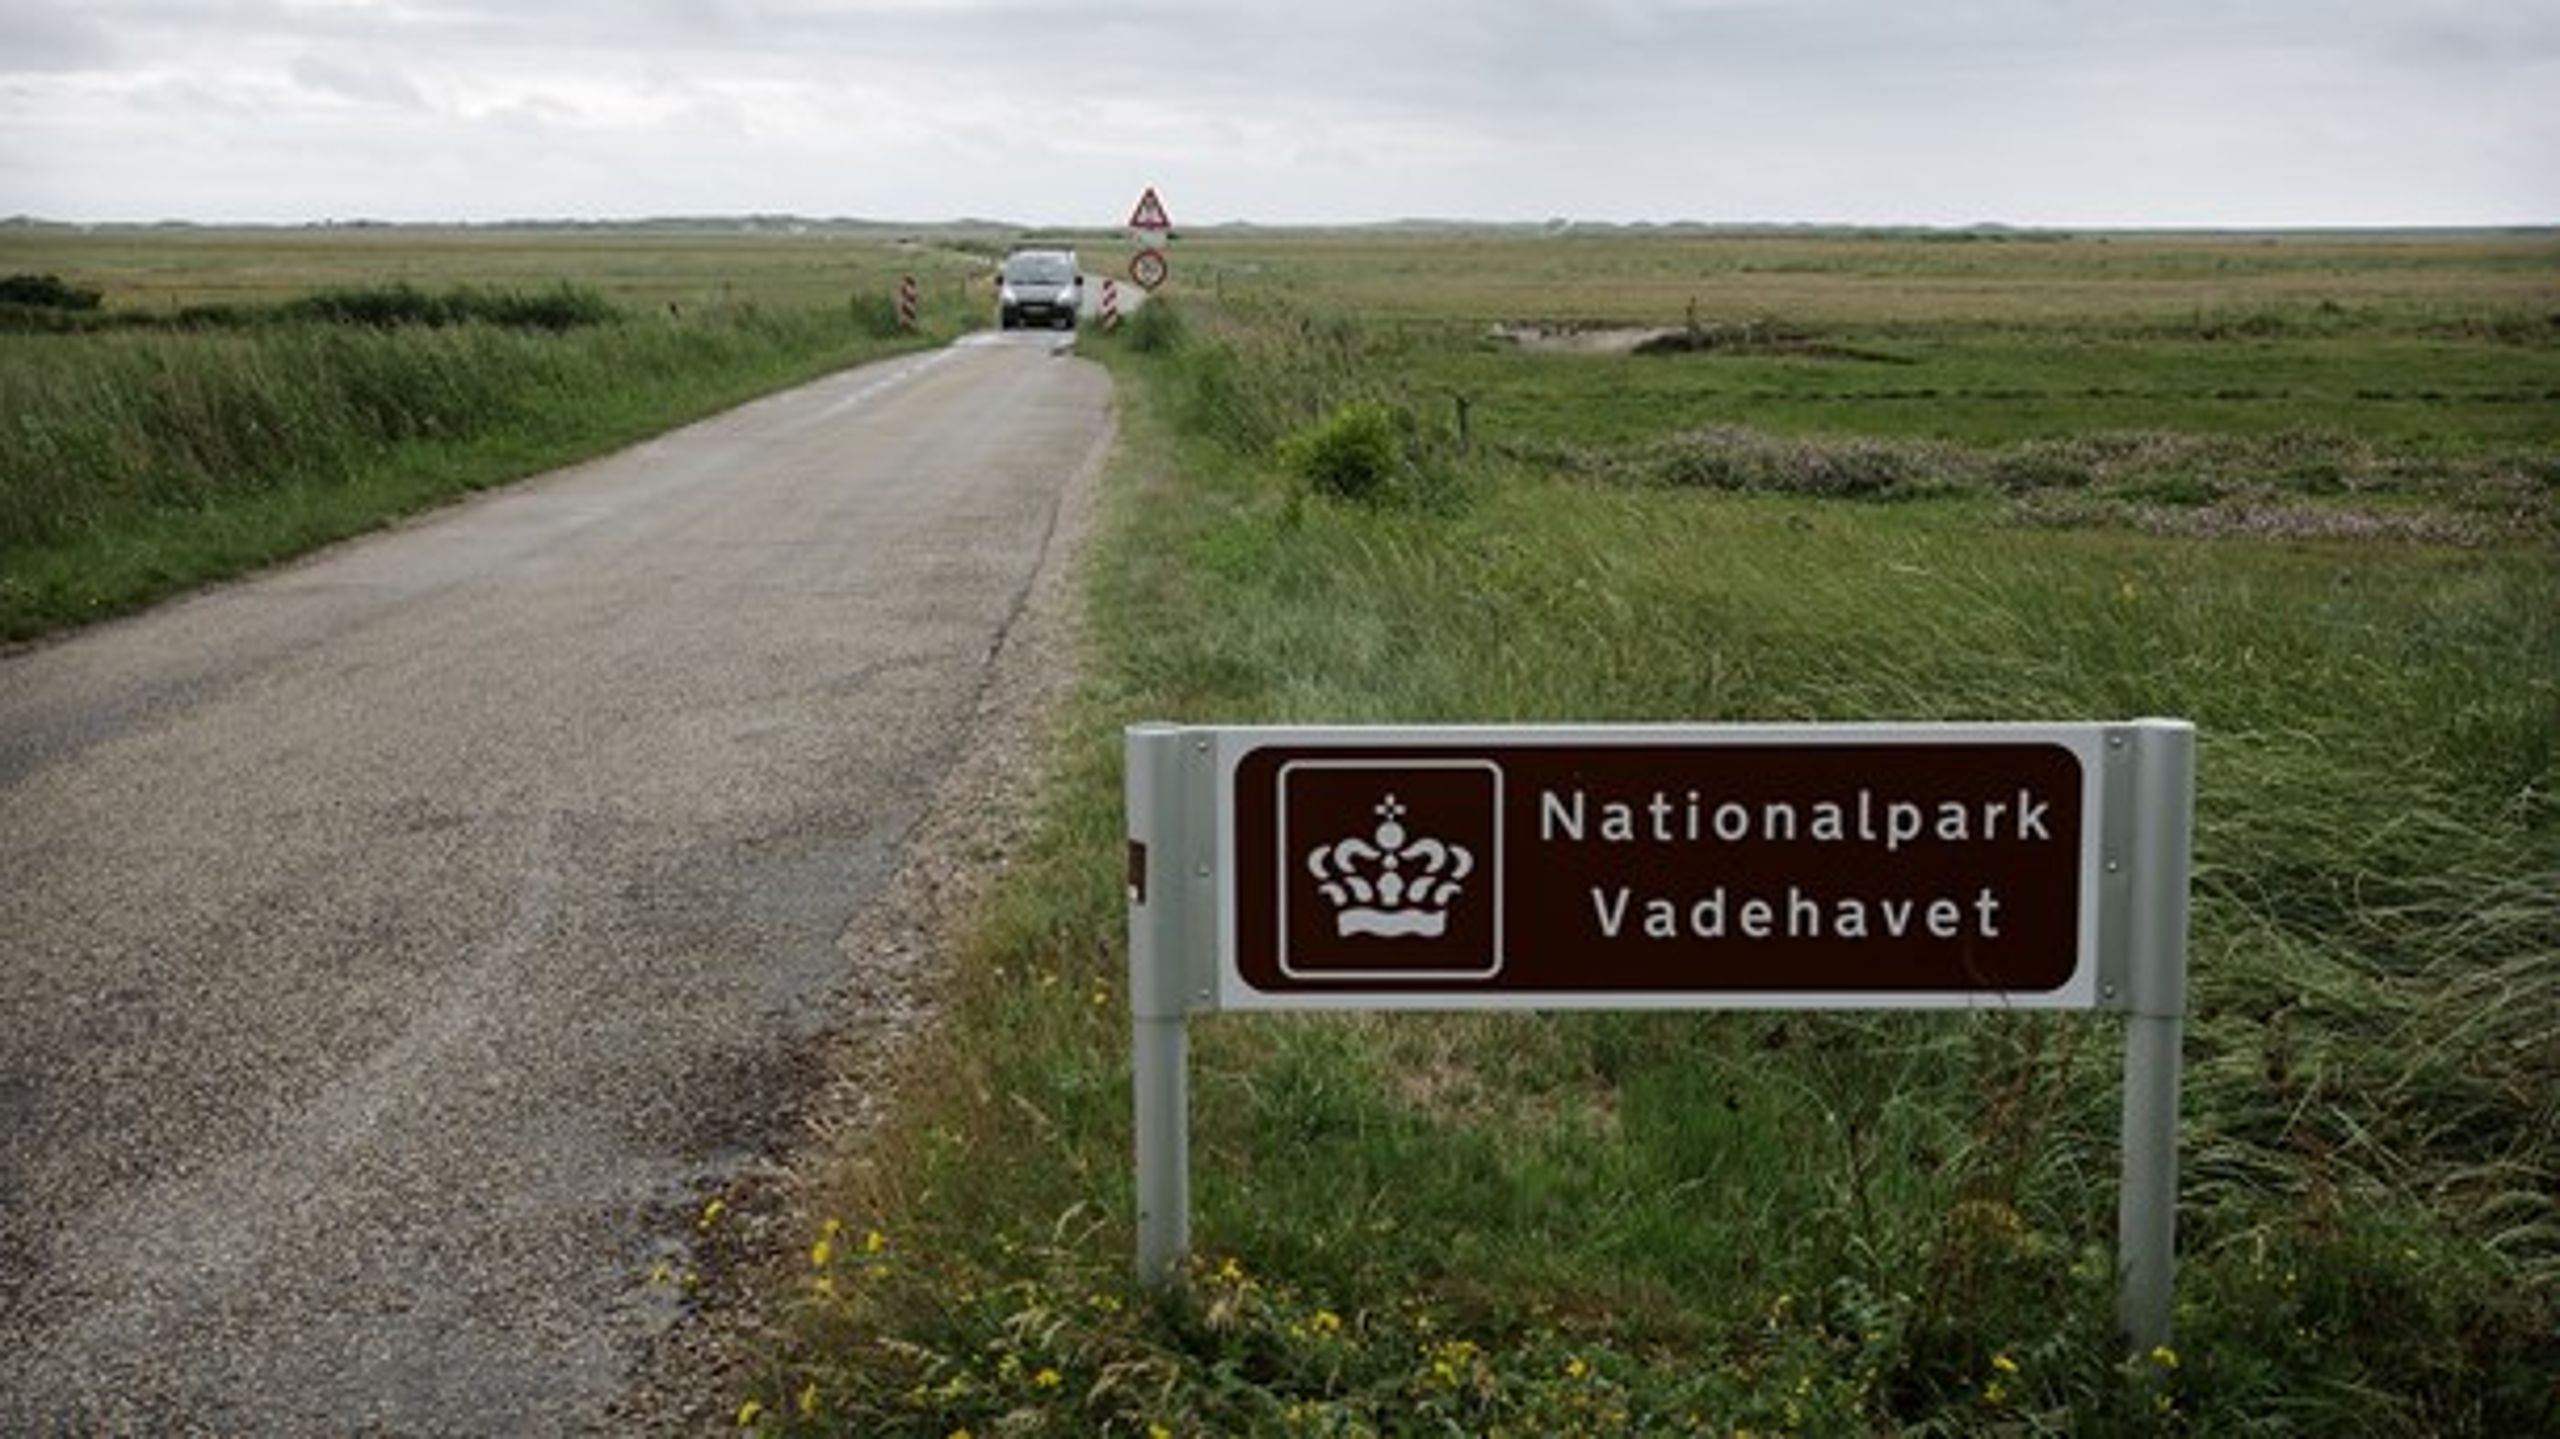 Det, der i dag adskiller en dansk ‘nationalpark’ fra et hvilket som helst andet areal i Danmark, er primært&nbsp;de skilte, hvorpå der står 'Nationalpark', mener Rune Engelbreth Larsen.